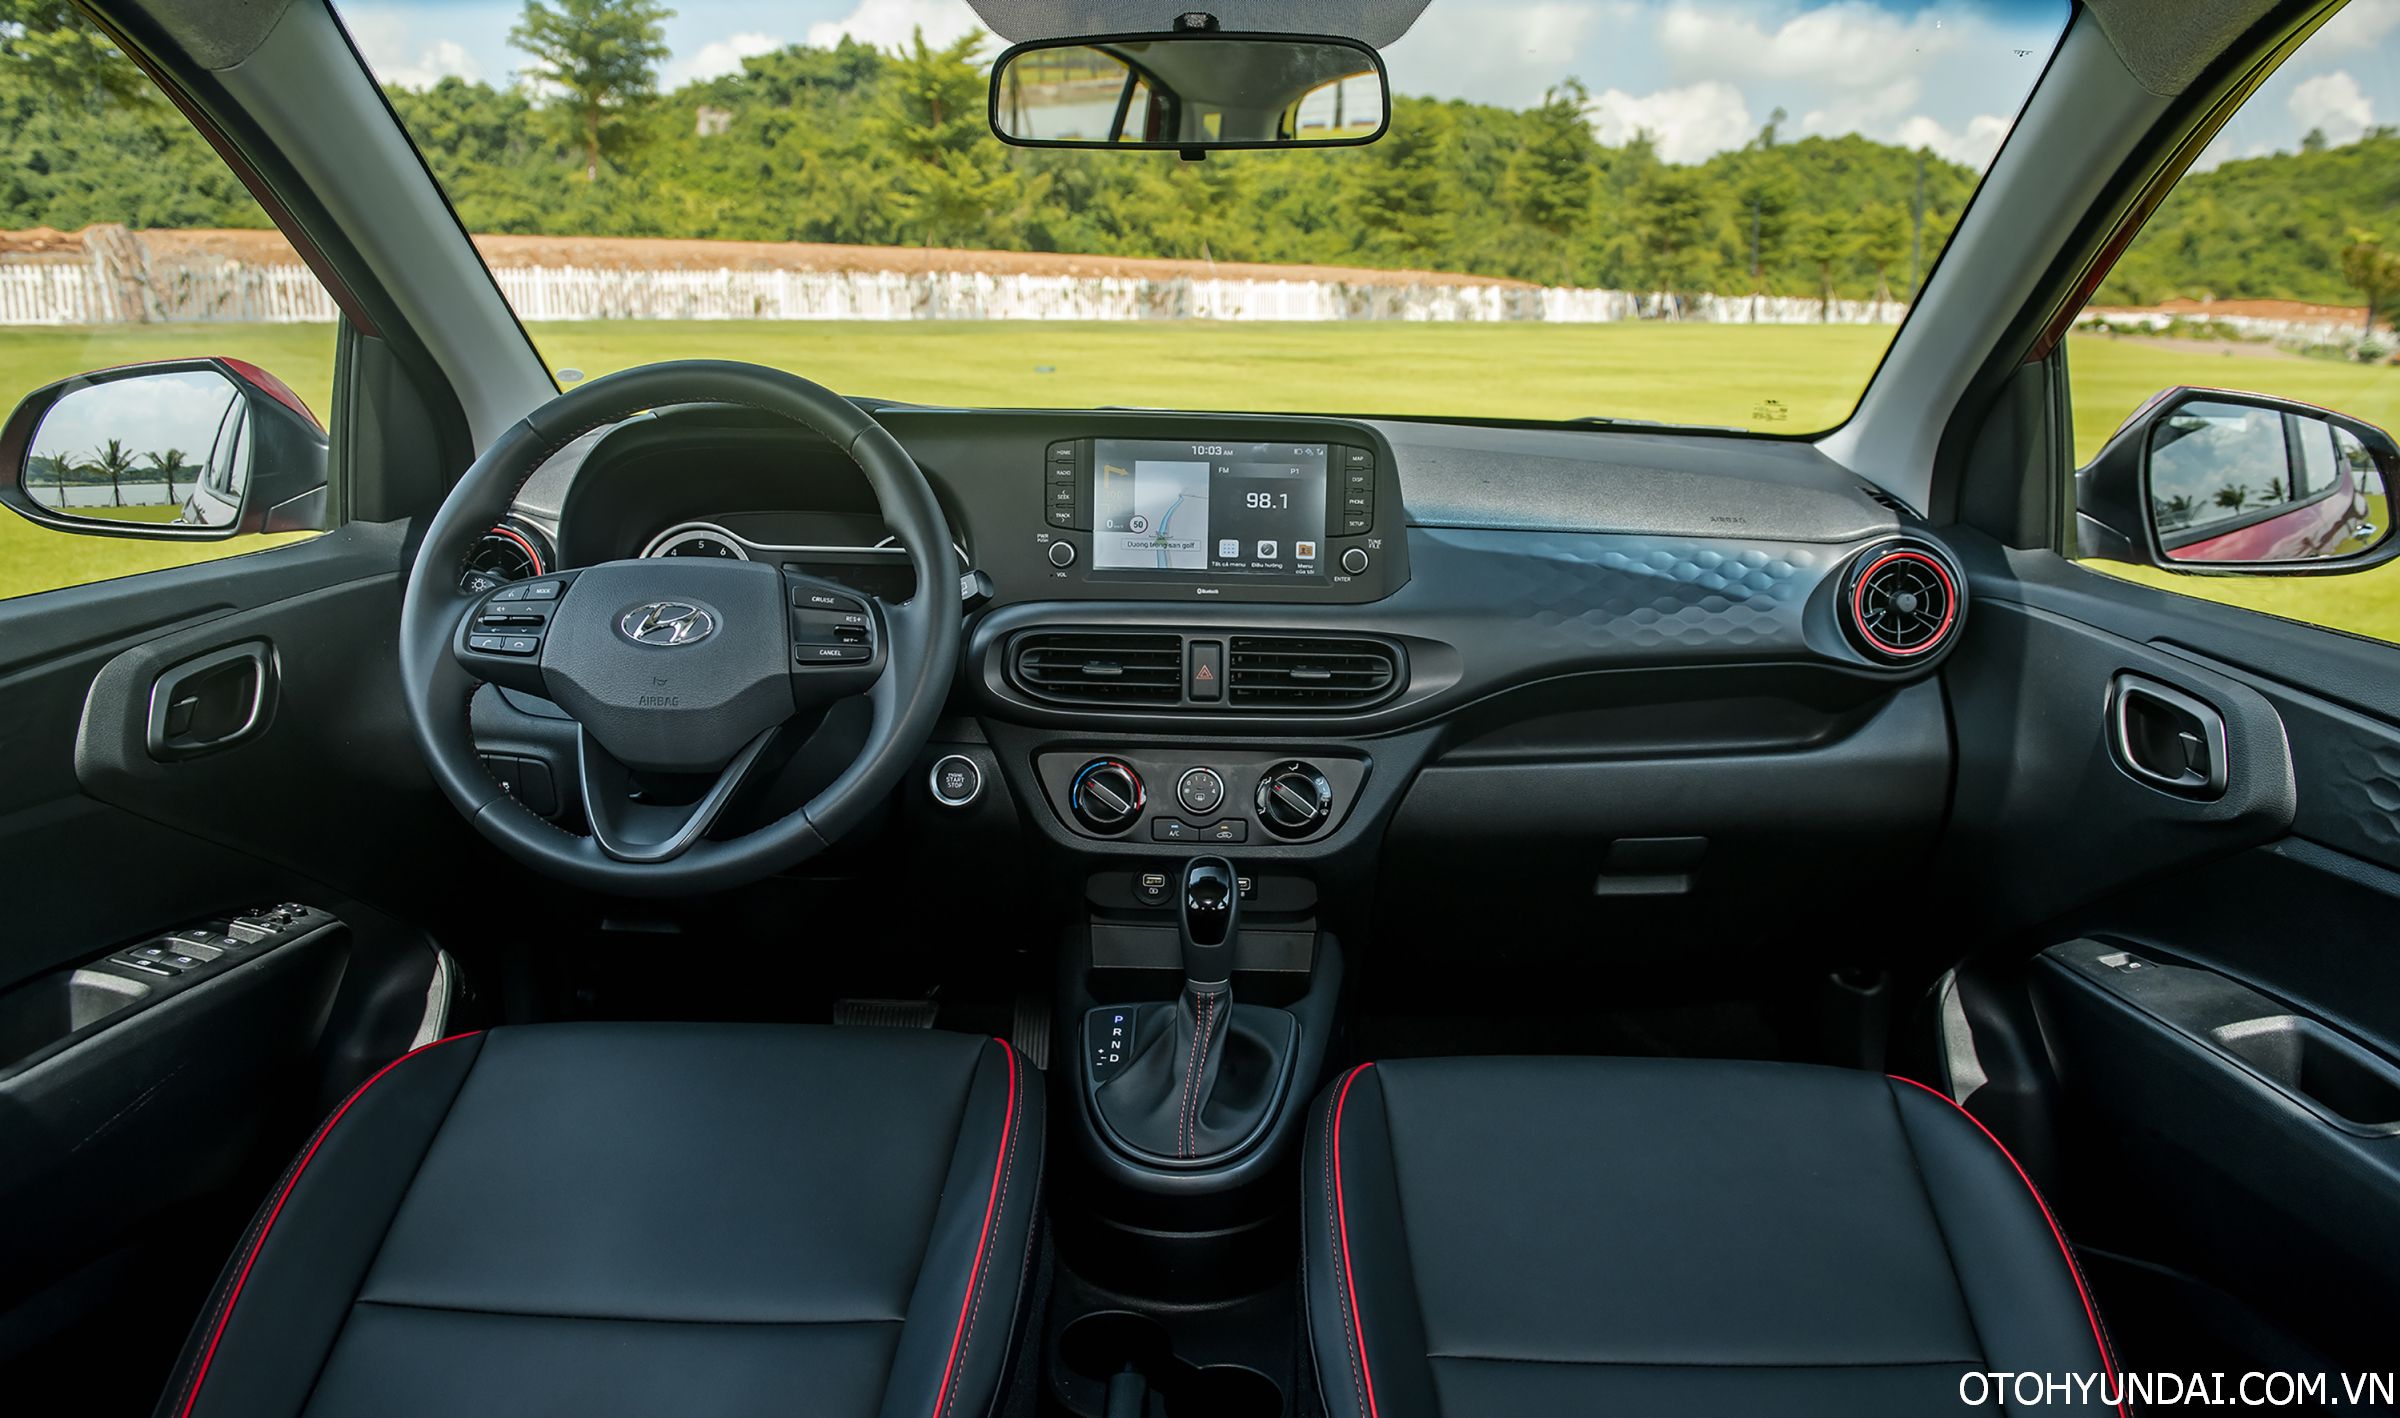 Hyundai Grand i10 Hatchback 1.2 MT Tiêu Chuẩn | Bảng táp-lô trung tâm giúp xe hiện đại hơn